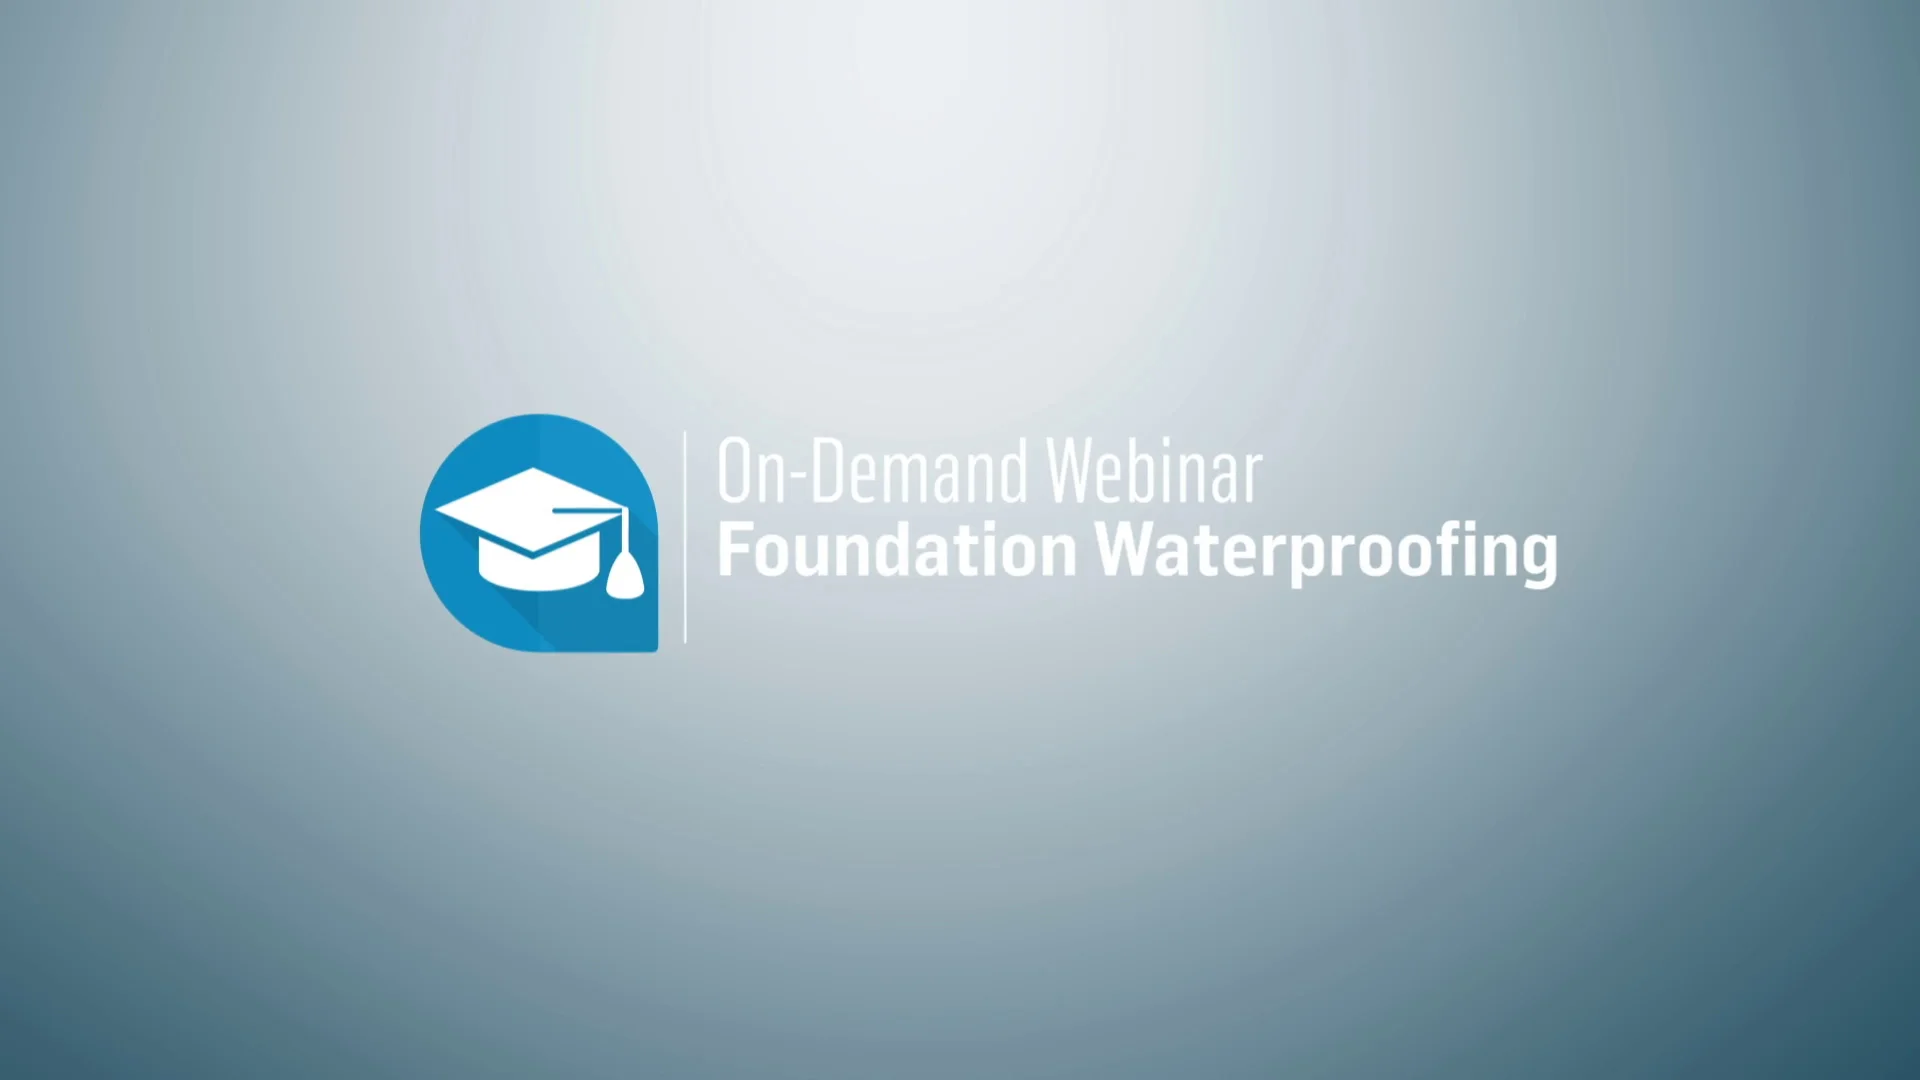 On-Demand Webinar Foundation Waterproofing